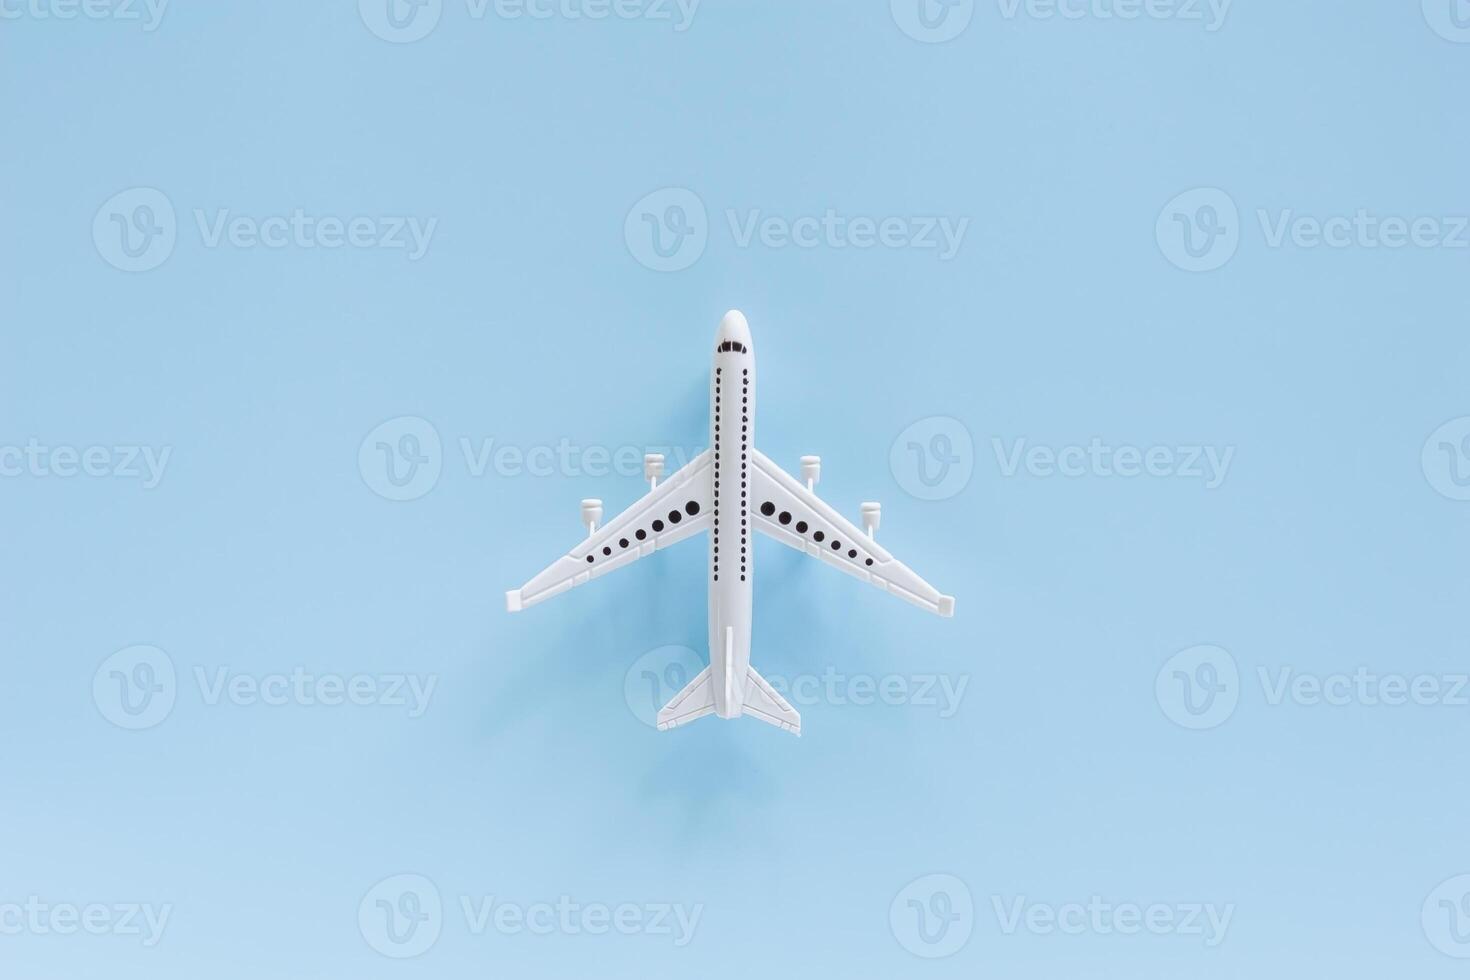 blanc avion modèle sur bleu Contexte photo